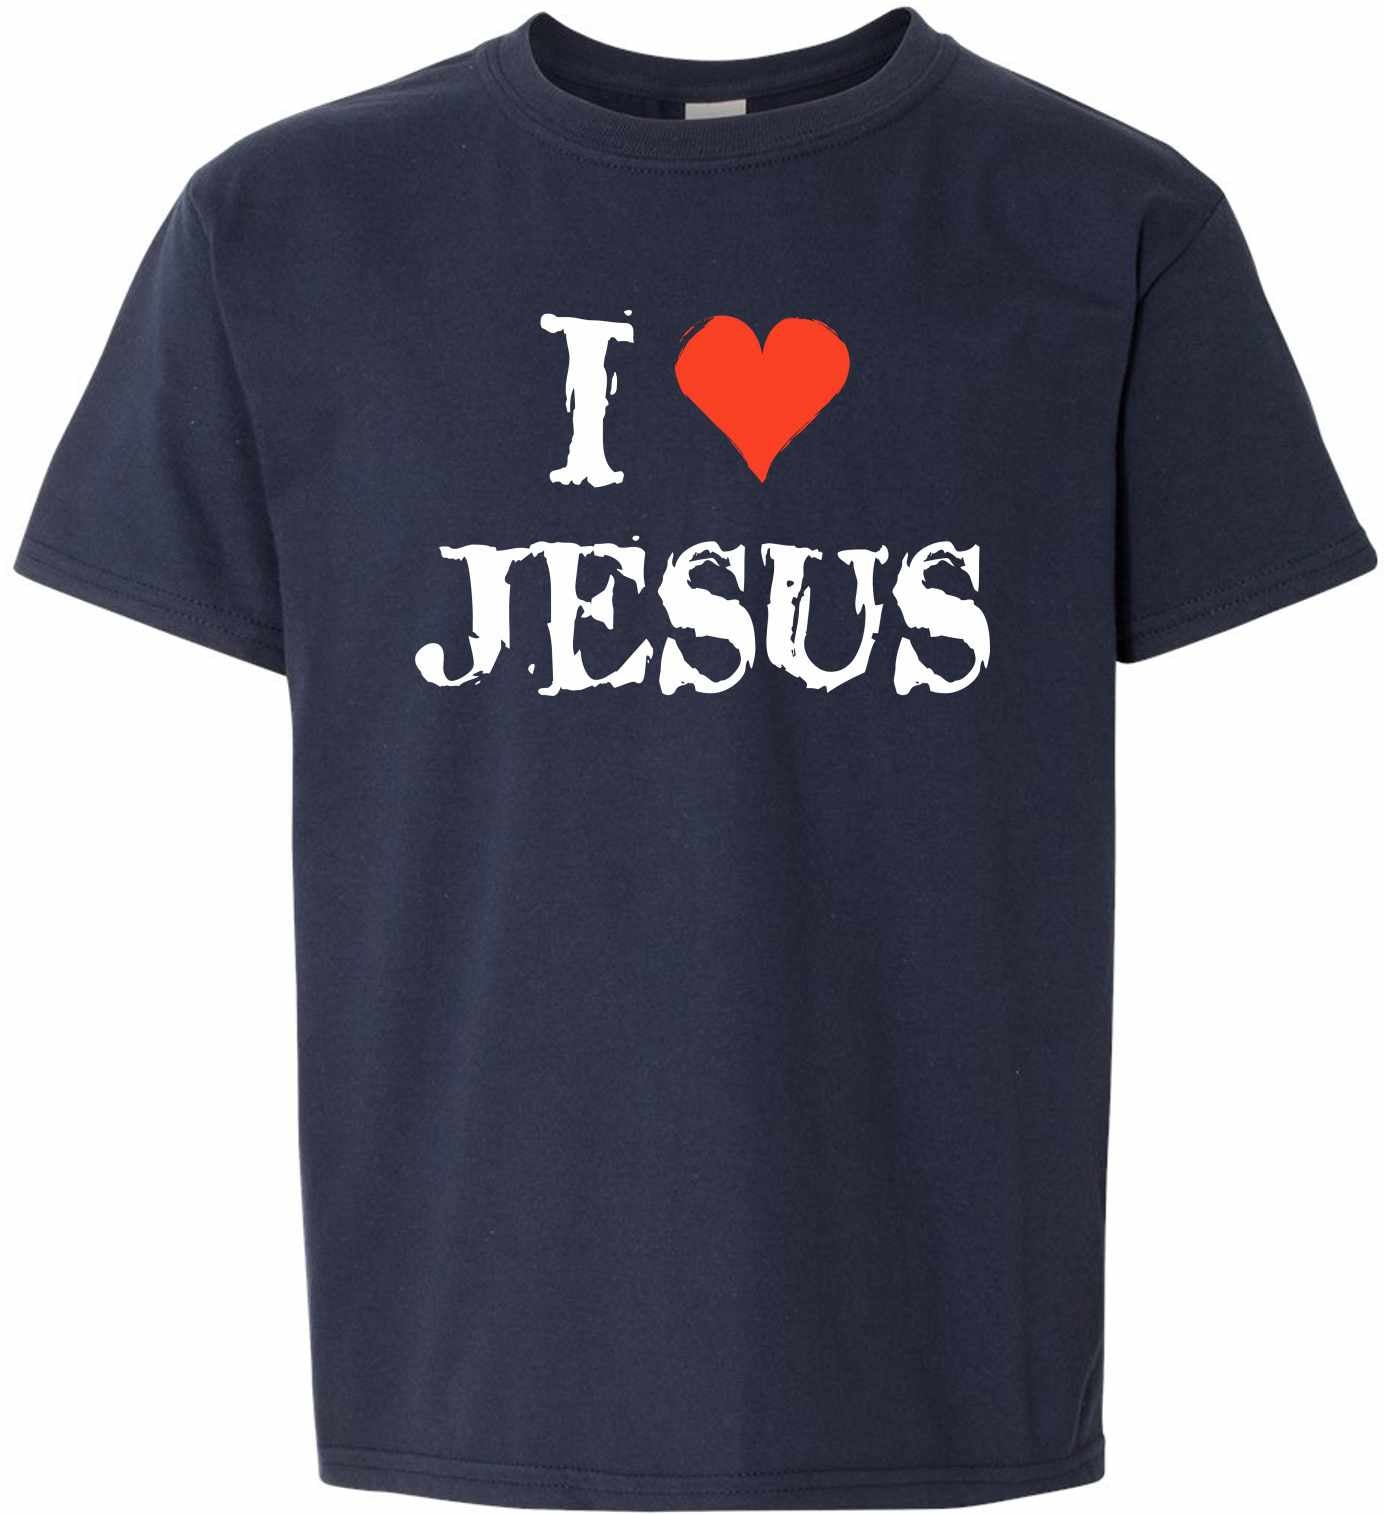 I Love Jesus on Kids T-Shirt